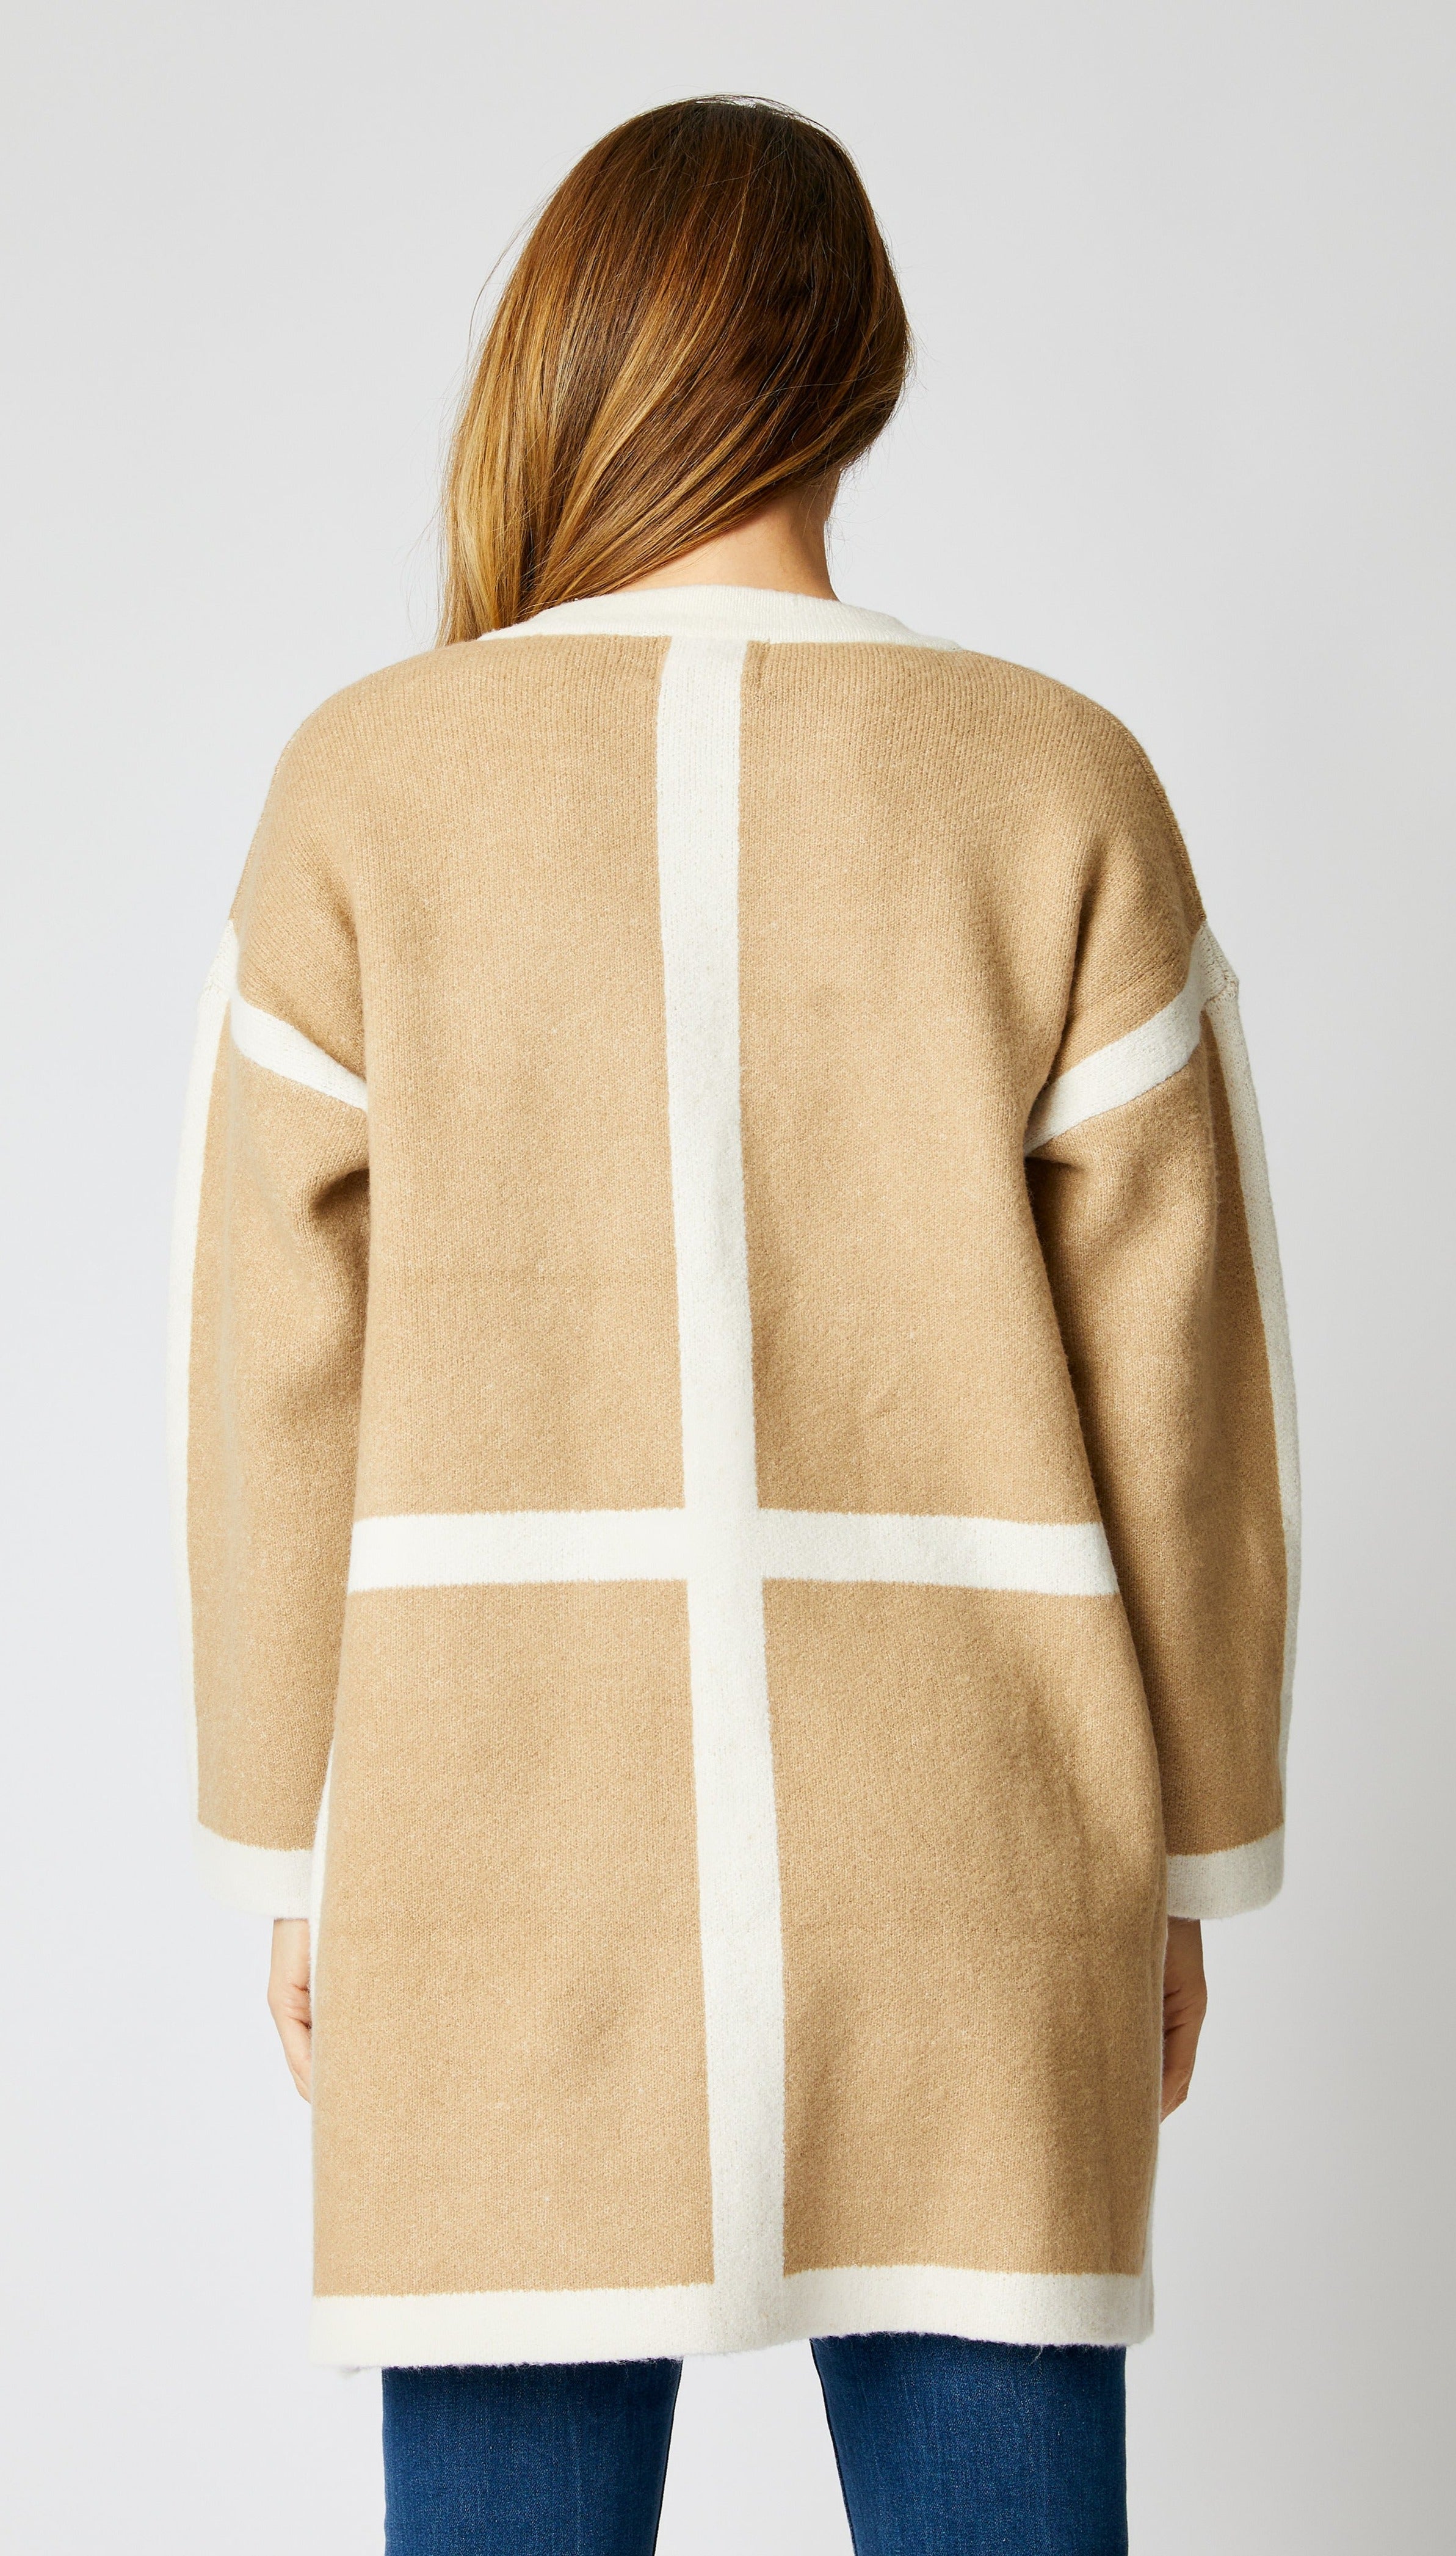 Geometric Camel Coat - Jacqueline B Clothing